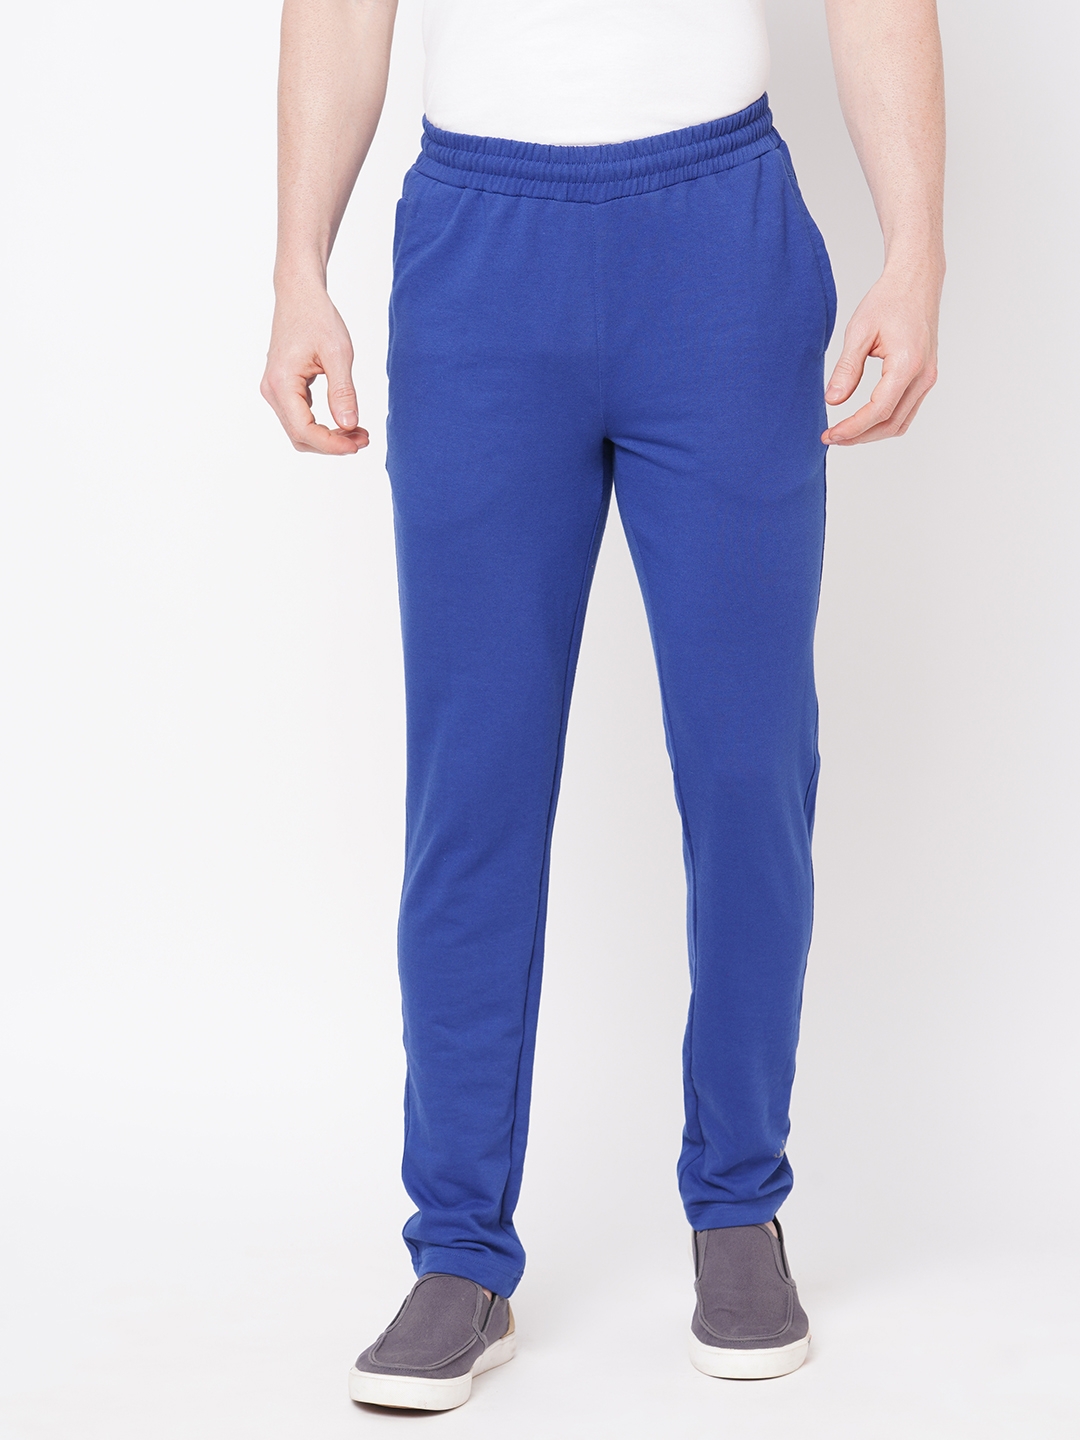 FITZ | Men's Slim Fit Blue Cotton Blend Casual Joogers